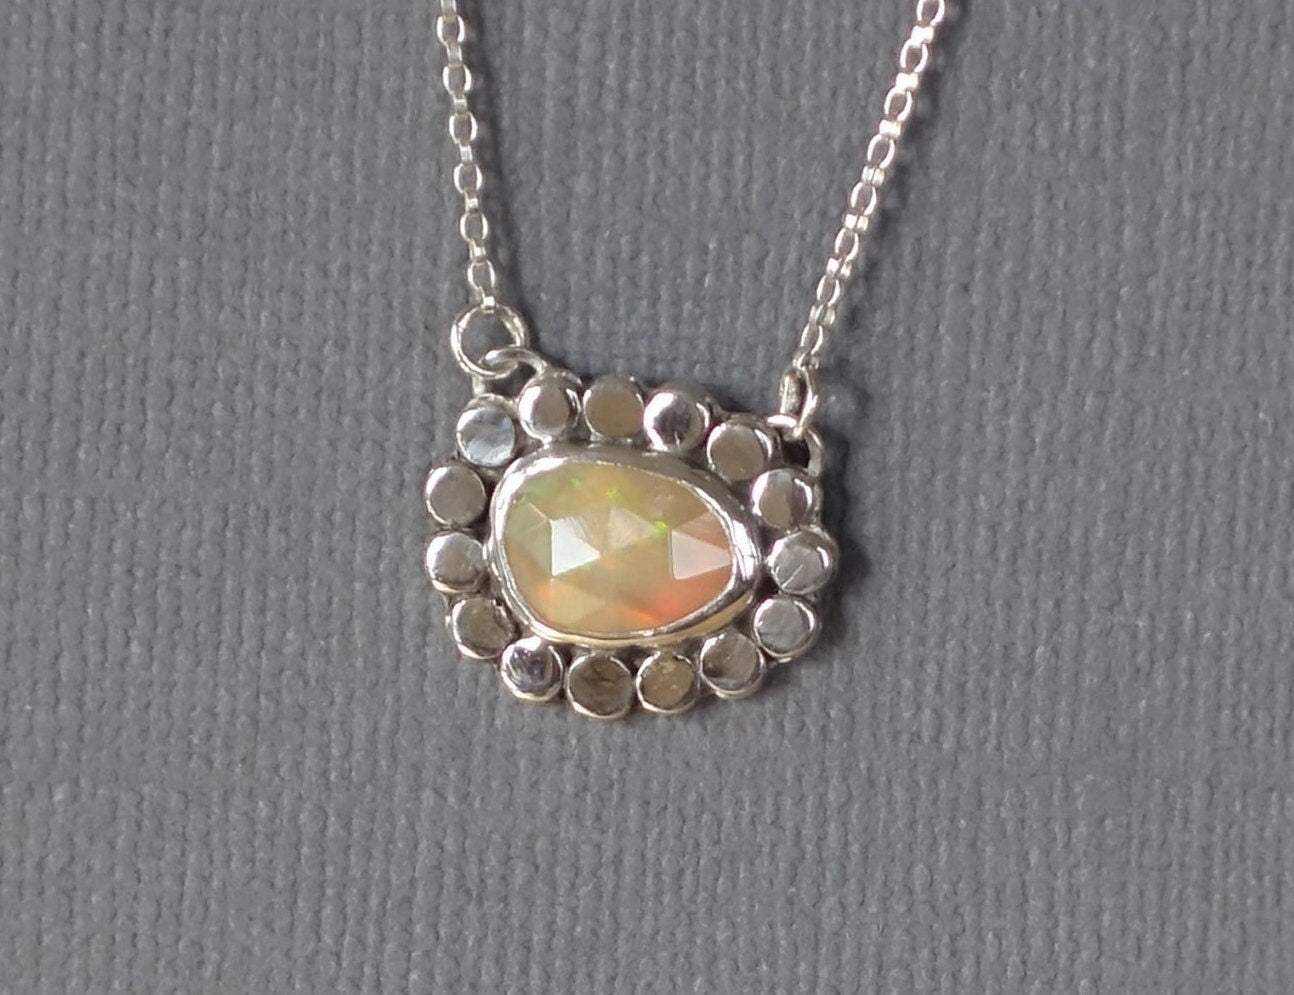 Opal Pendant, Opal Necklace, Flower Pendant, Flower Necklace, Silver Opal Pendant